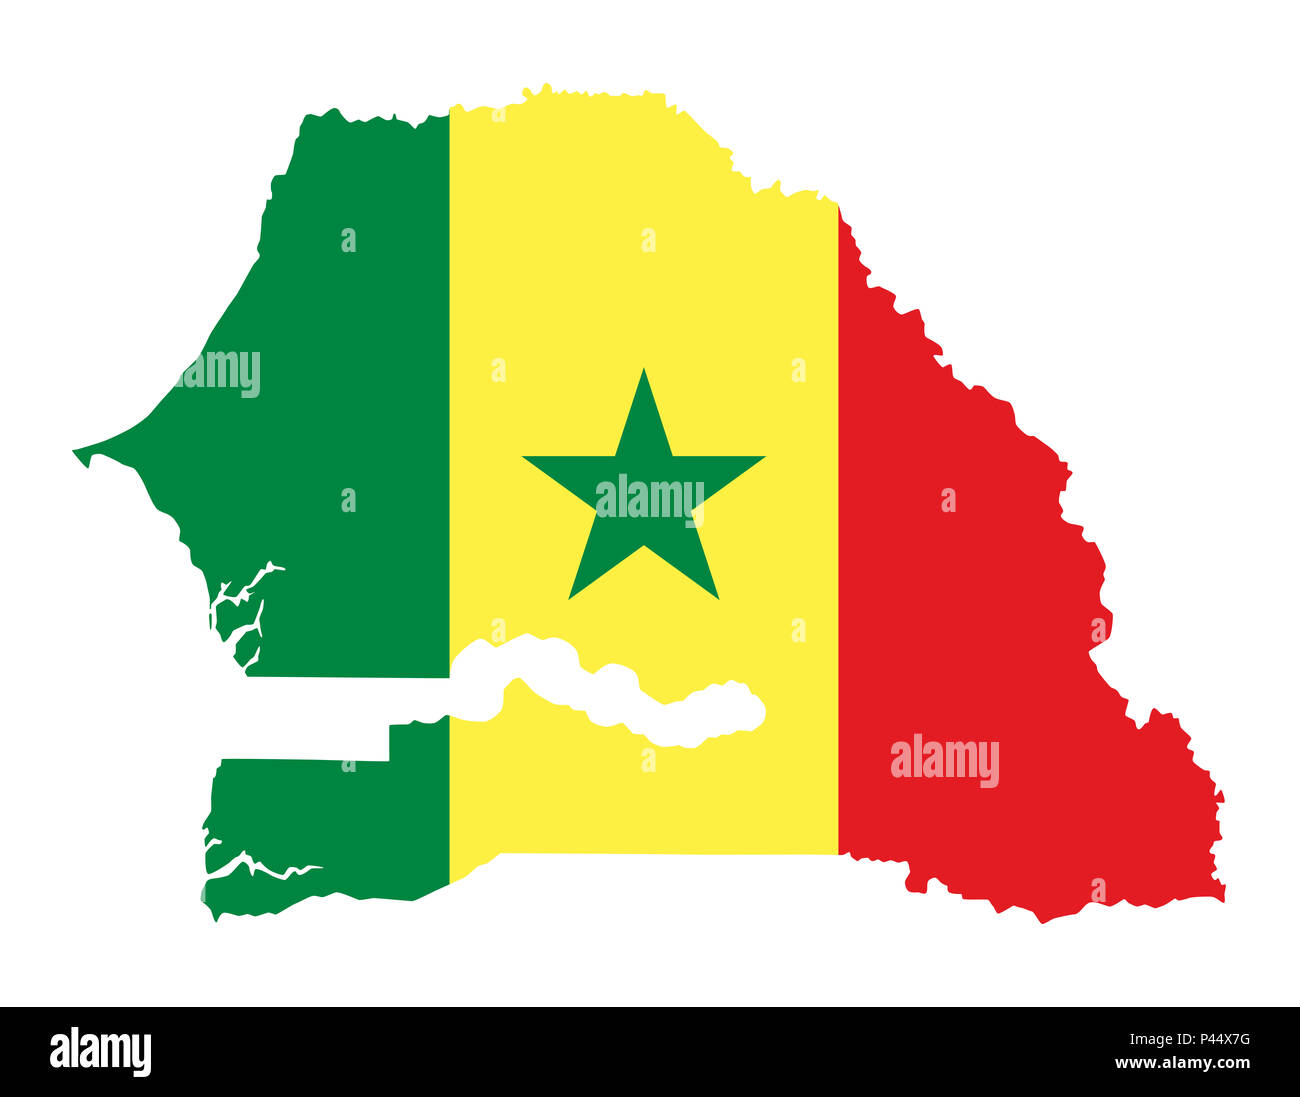 Flagge Senegal im Land Silhouette. Trikolore von drei vertikalen grünen, gelben und roten Bänder mit einem grünen Stern. Republik und Land in Westafrika. Stockfoto